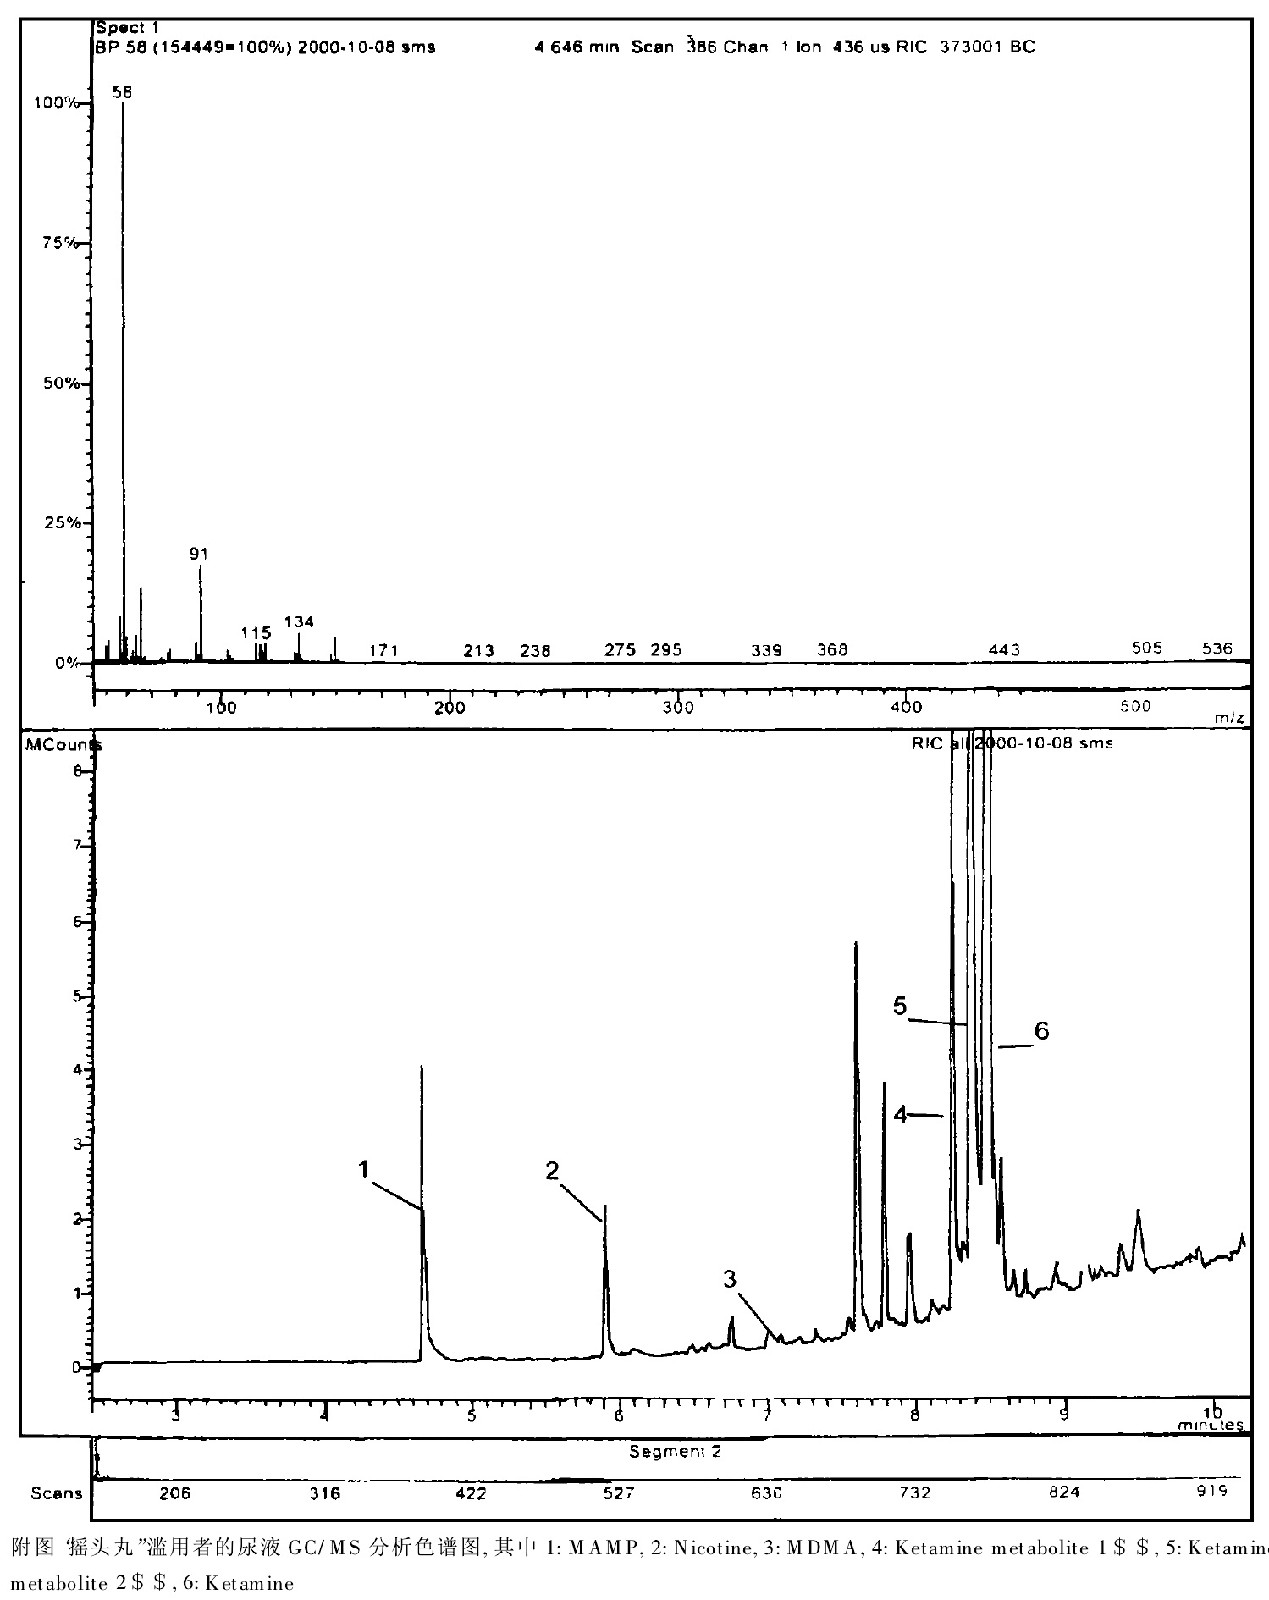 搖頭丸濫用者的尿液GC-MS分析色譜圖